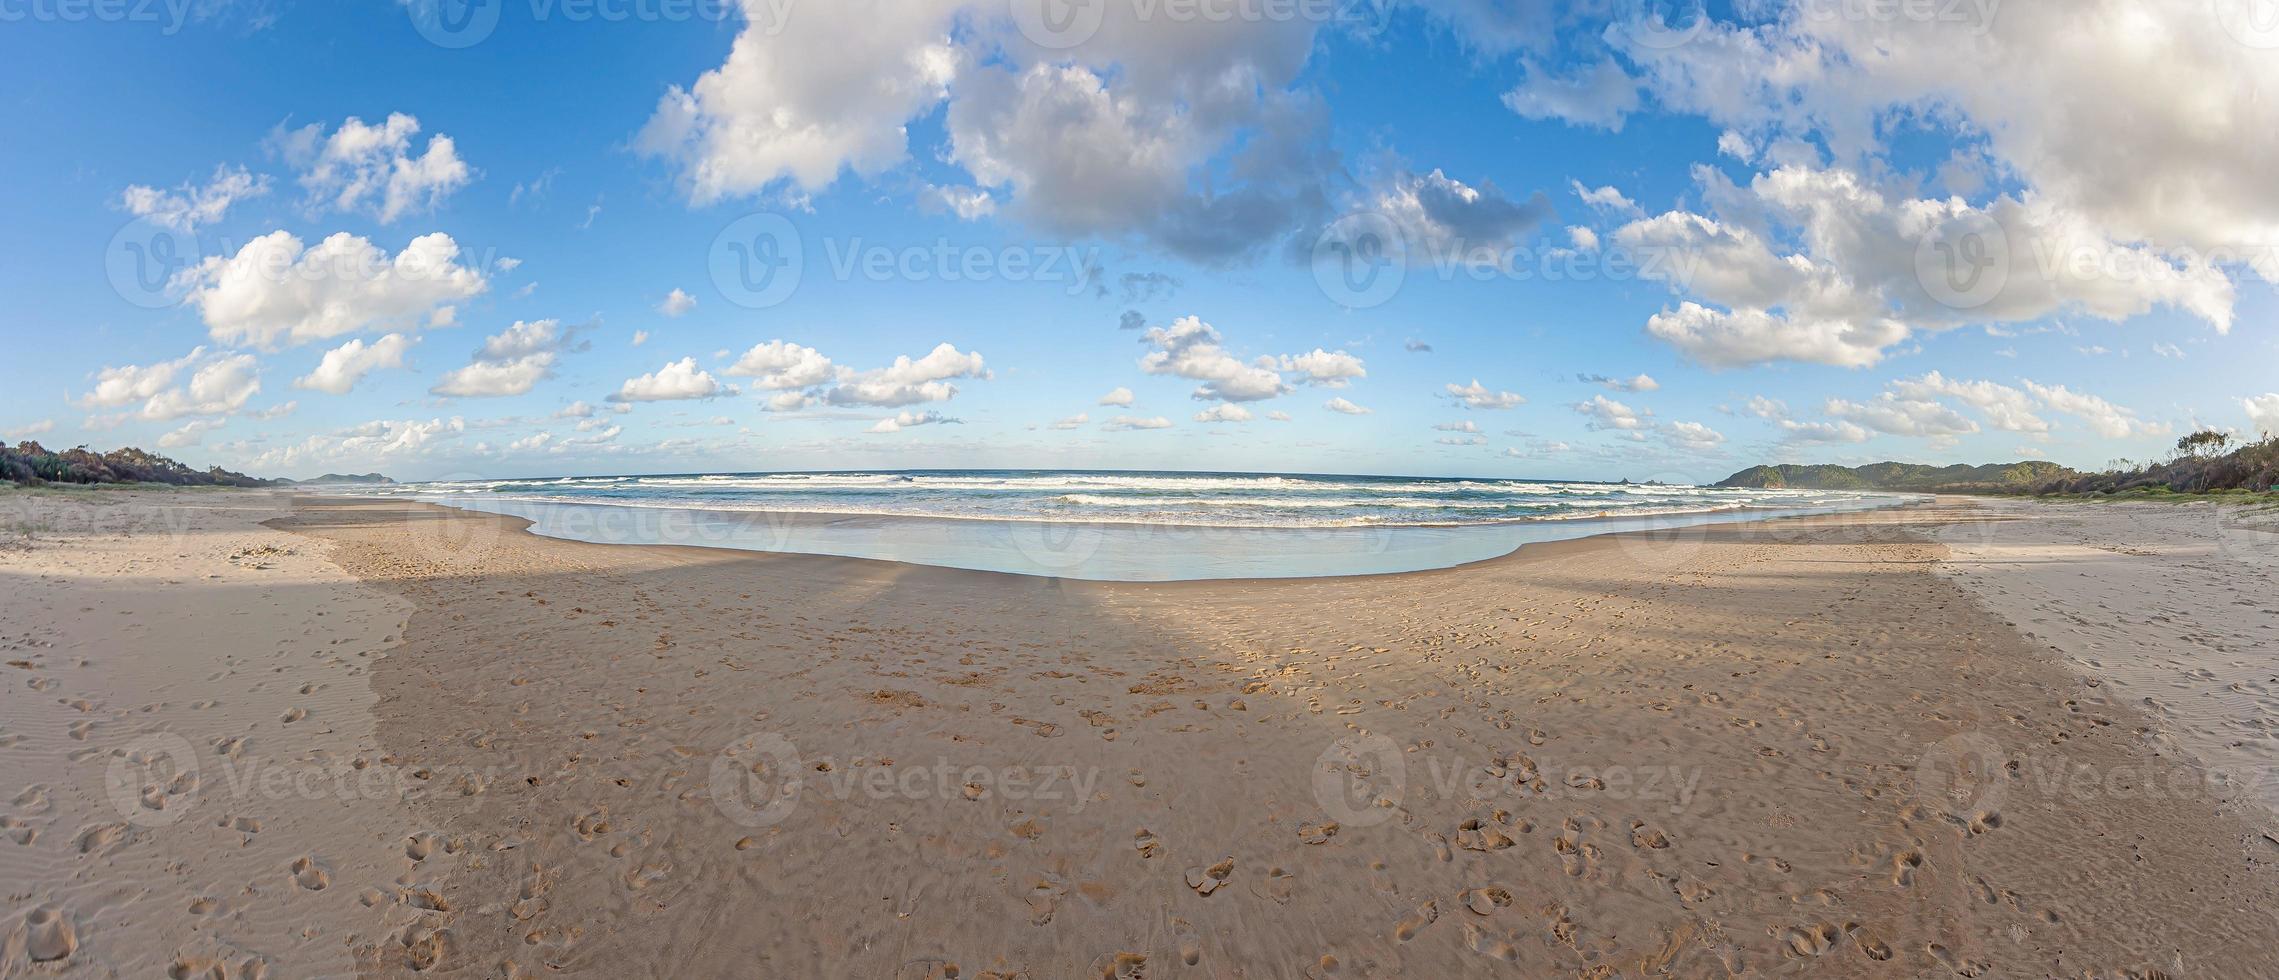 panorama sobre uma praia paradisíaca na costa dourada australiana no estado de queensland foto